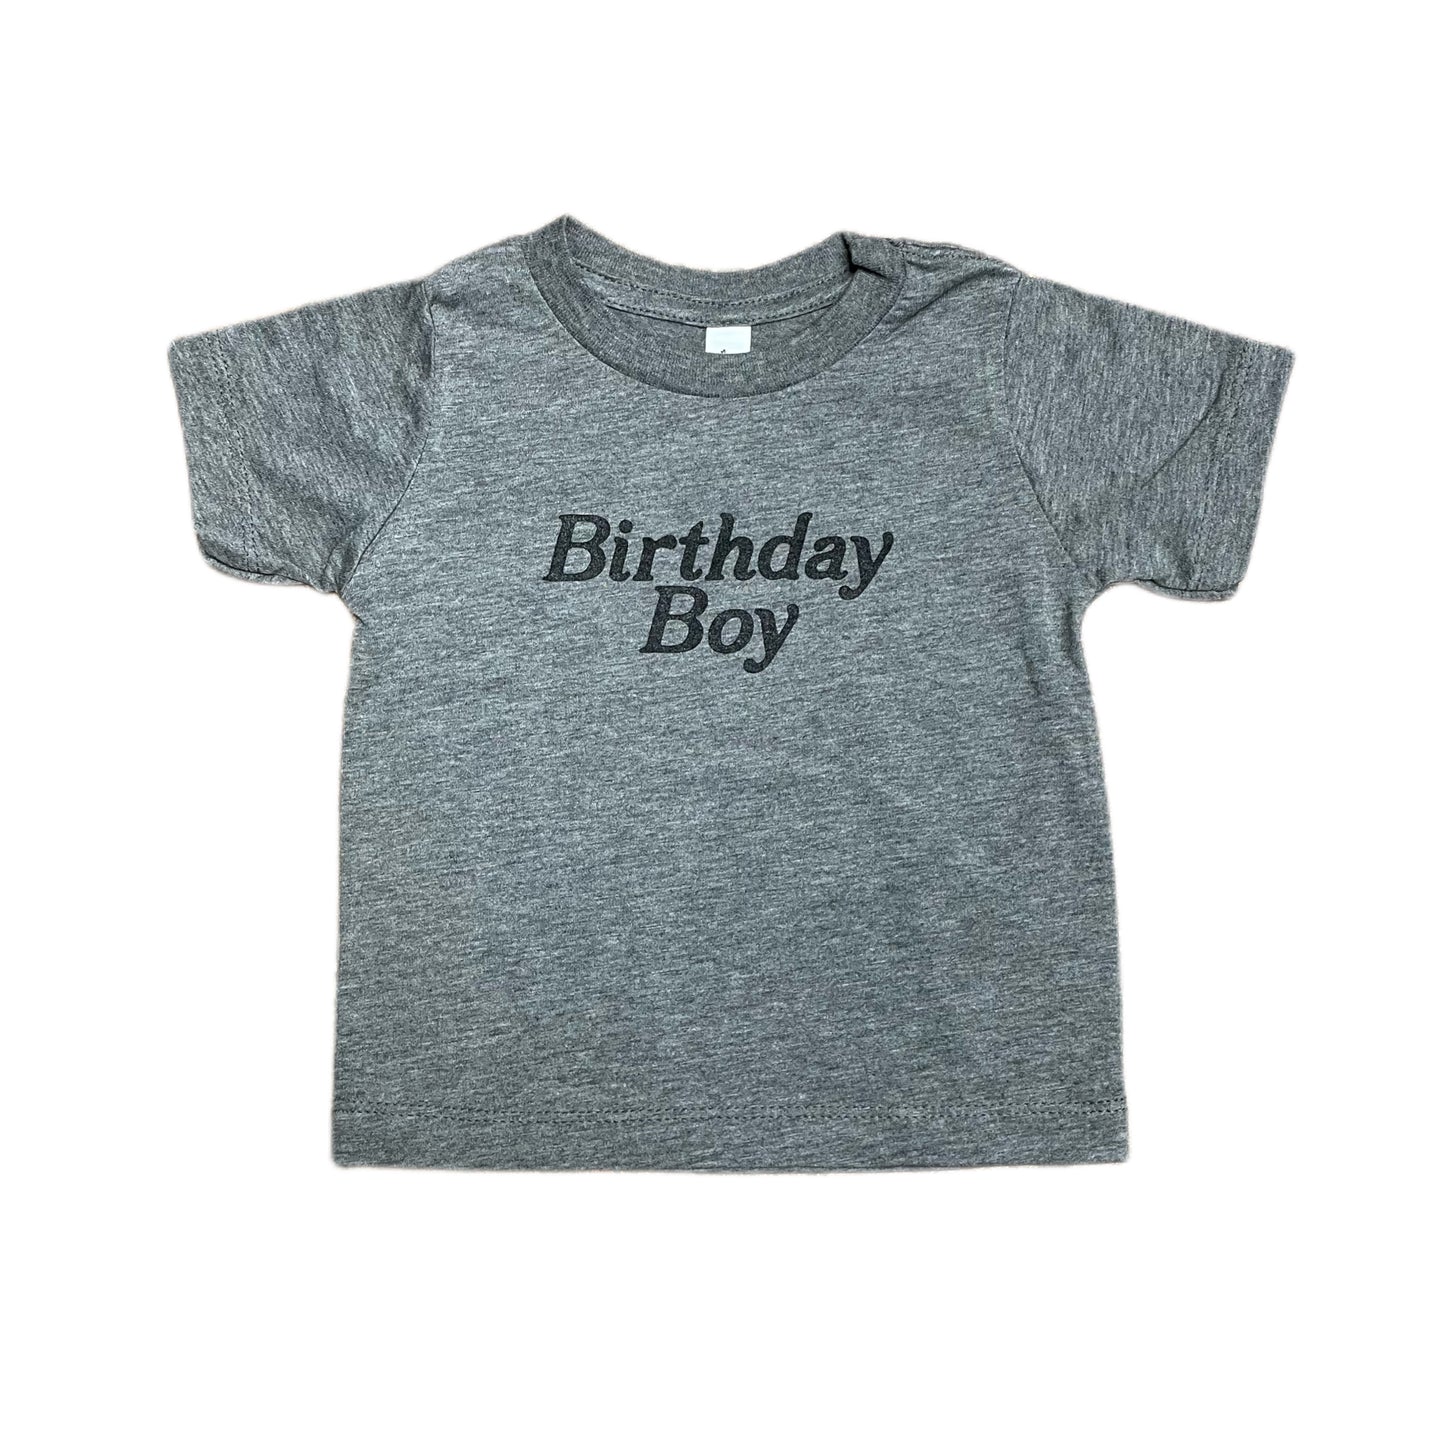 Birthday Boy Tee in Gray